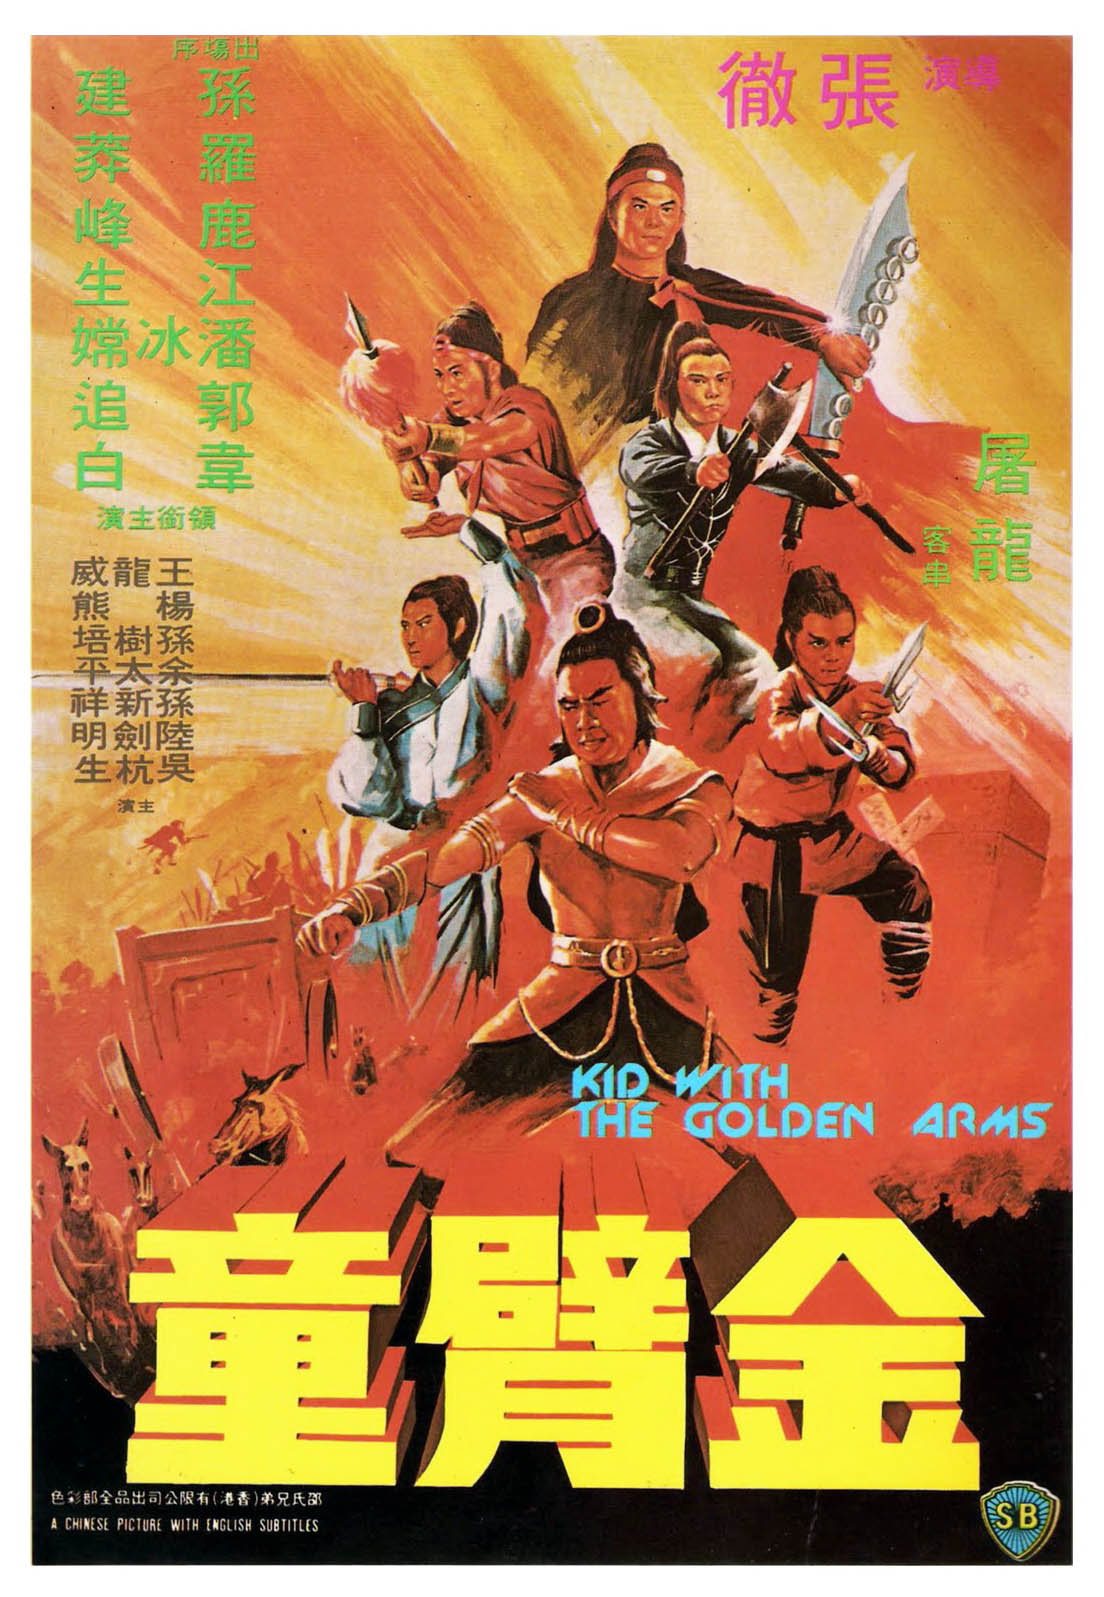 ดูหนังออนไลน์ฟรี The Kid With The Golden Arm (1979) จอมโหดมนุษย์แขนทองคำ